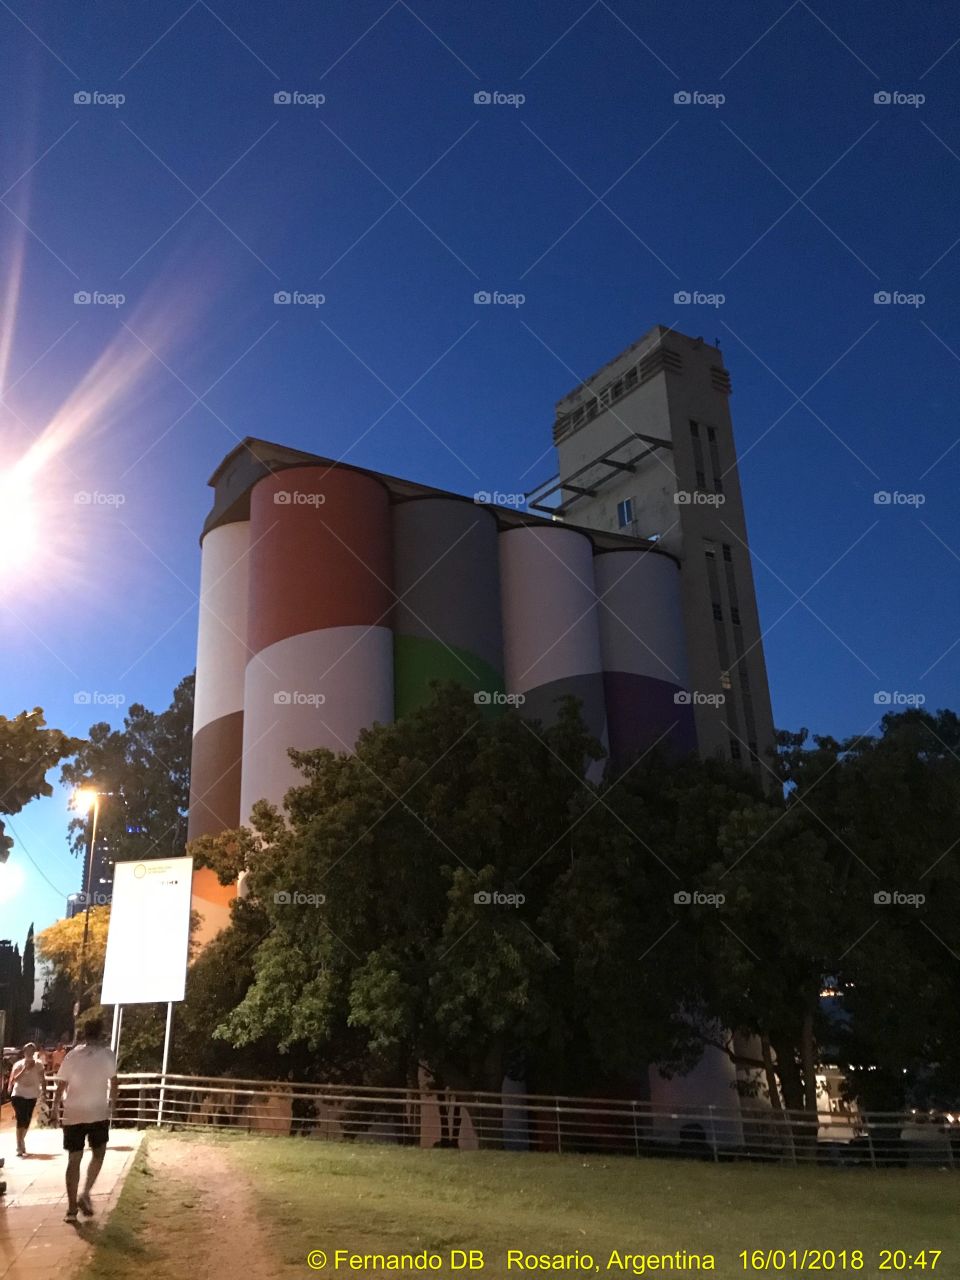 Los silos davis. Ciudad de Rosario. Modo nocturno. Muy elegantes! Retrato de una tardecita